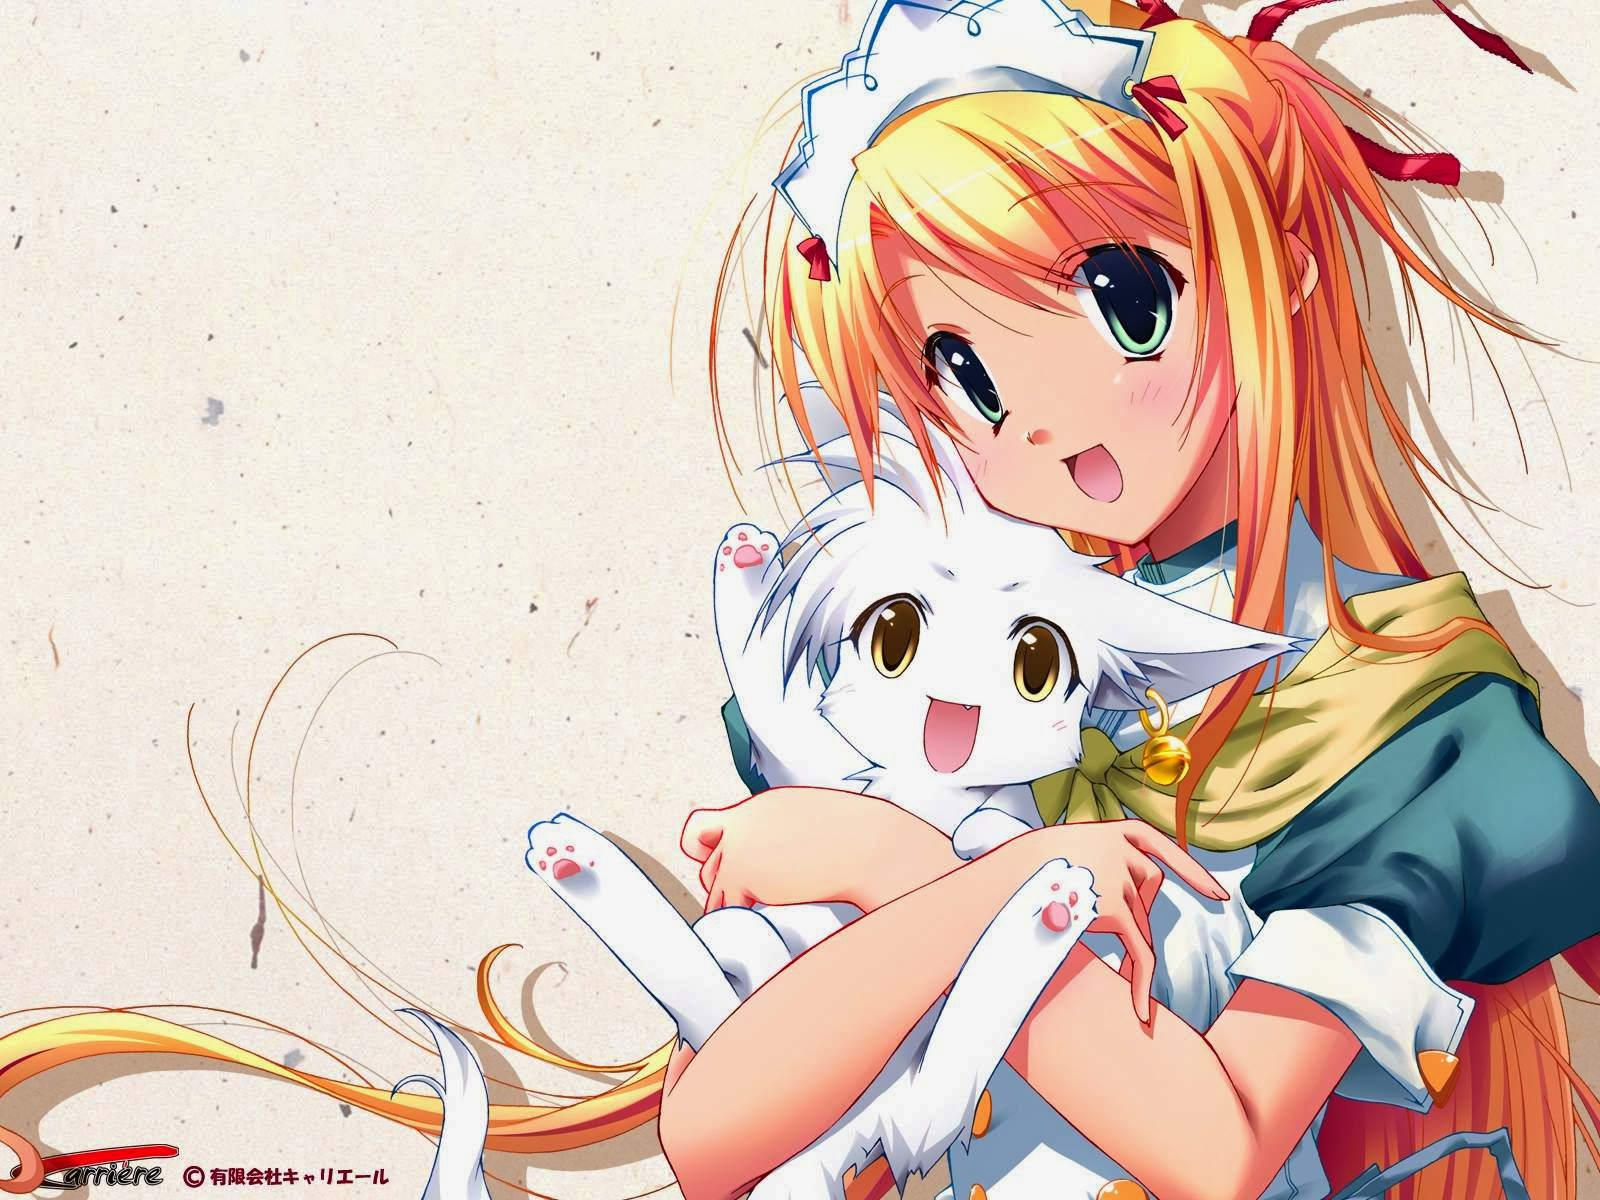 kawaii anime wallpaper,dibujos animados,anime,cg artwork,pelo castaño,ilustración